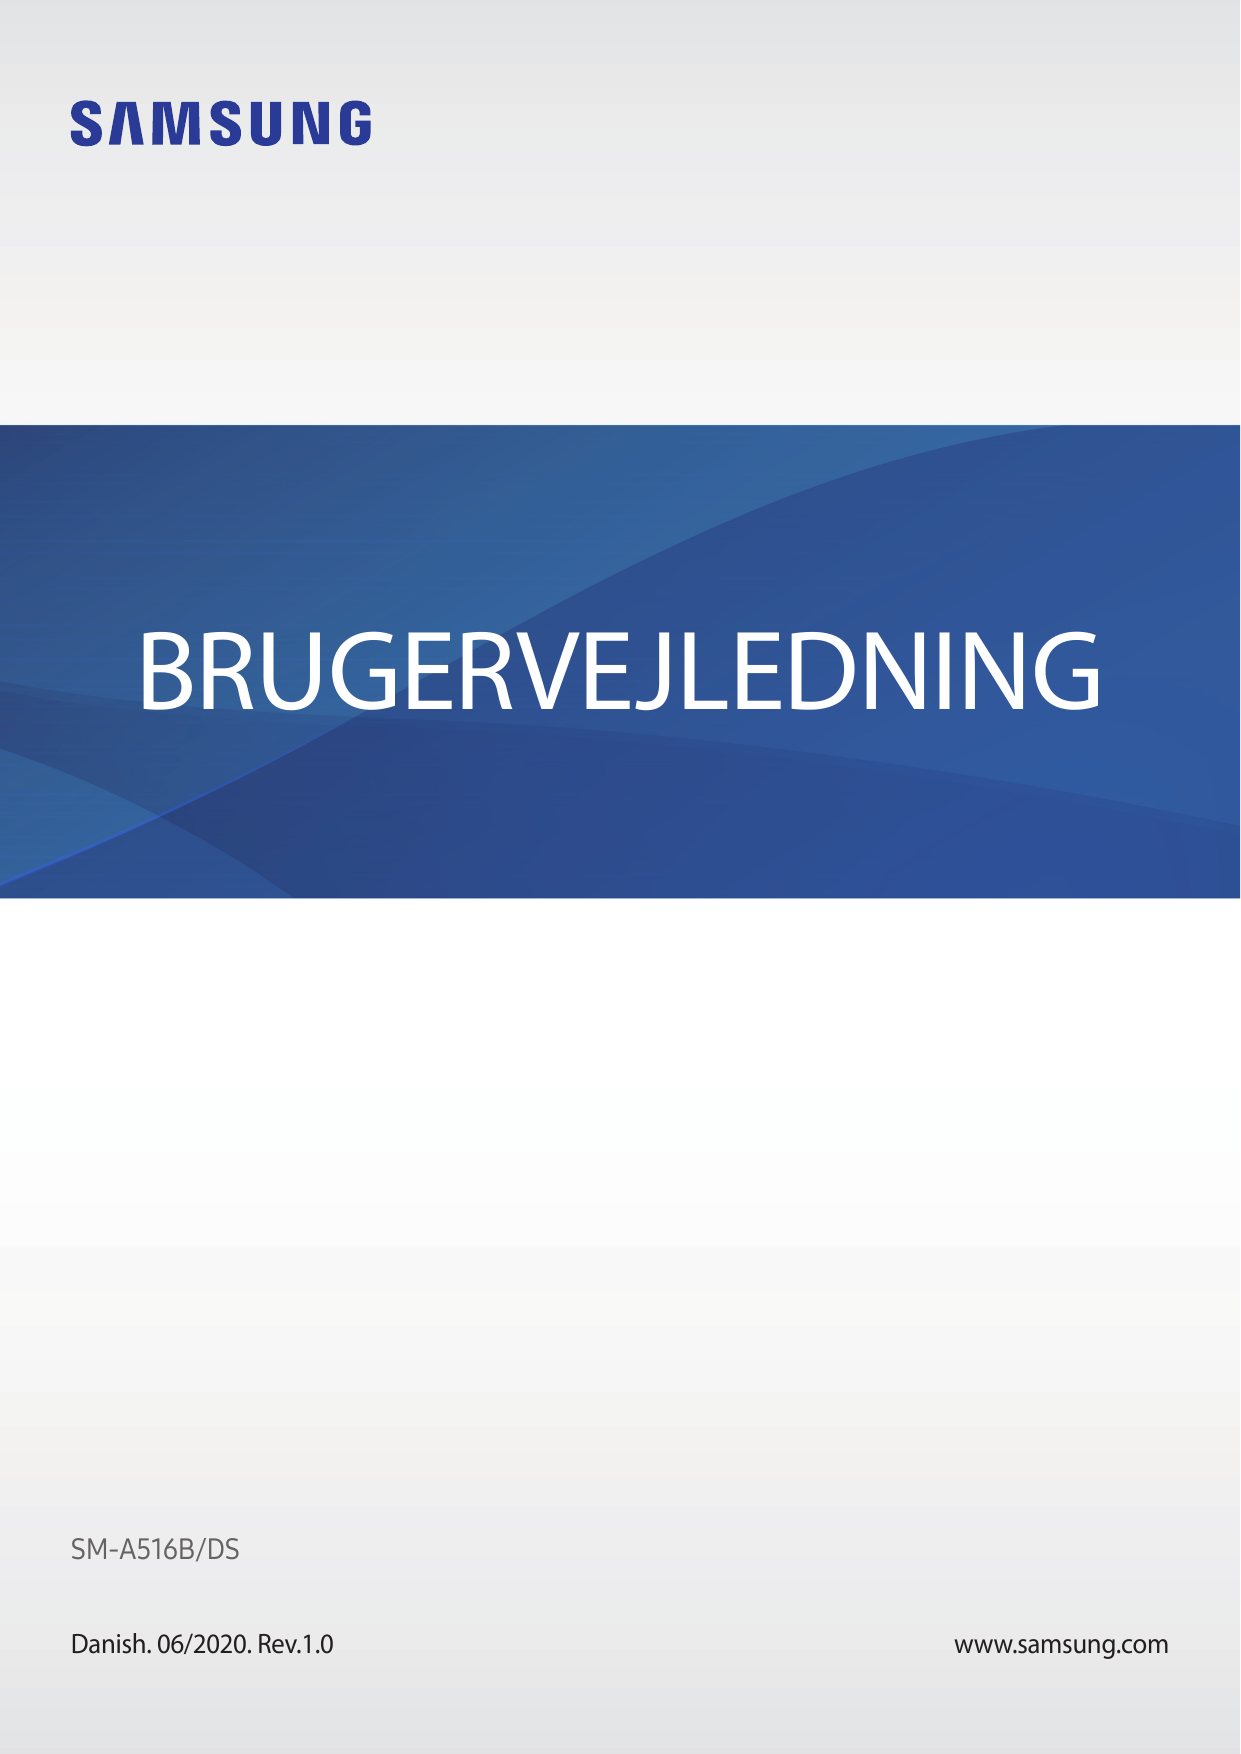 BRUGERVEJLEDNINGSM-A516B/DSDanish. 06/2020. Rev.1.0www.samsung.com